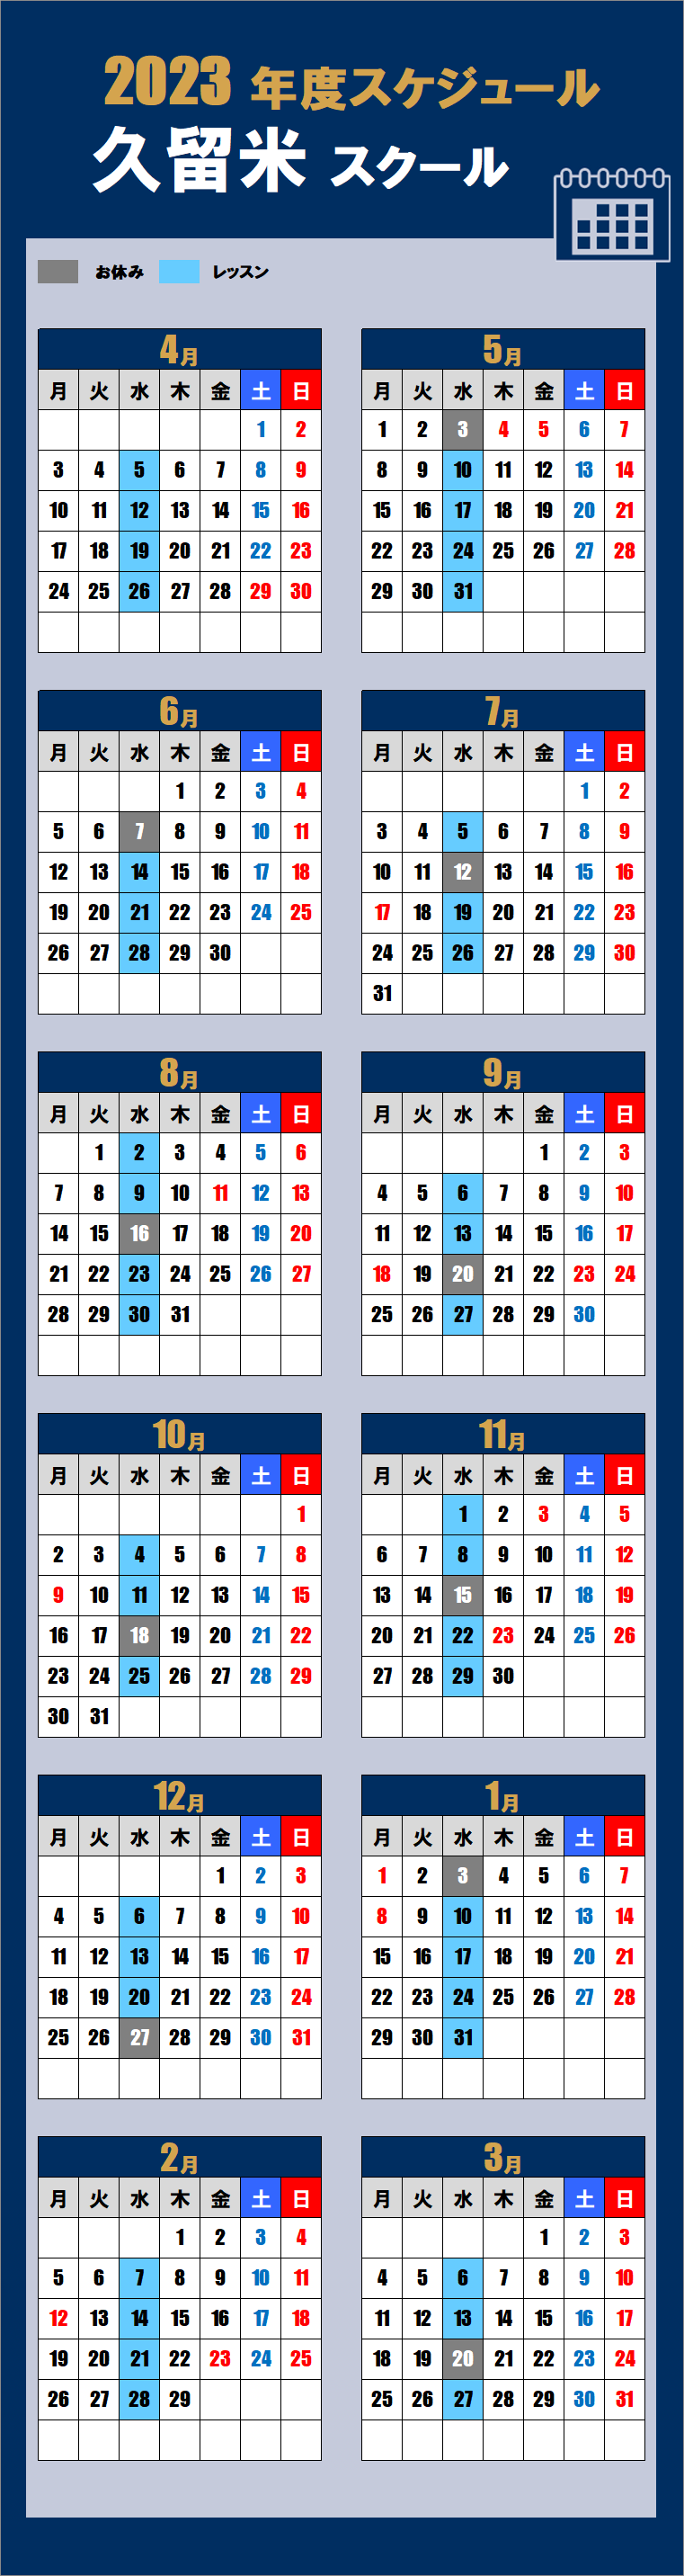 久留米スクールカレンダー